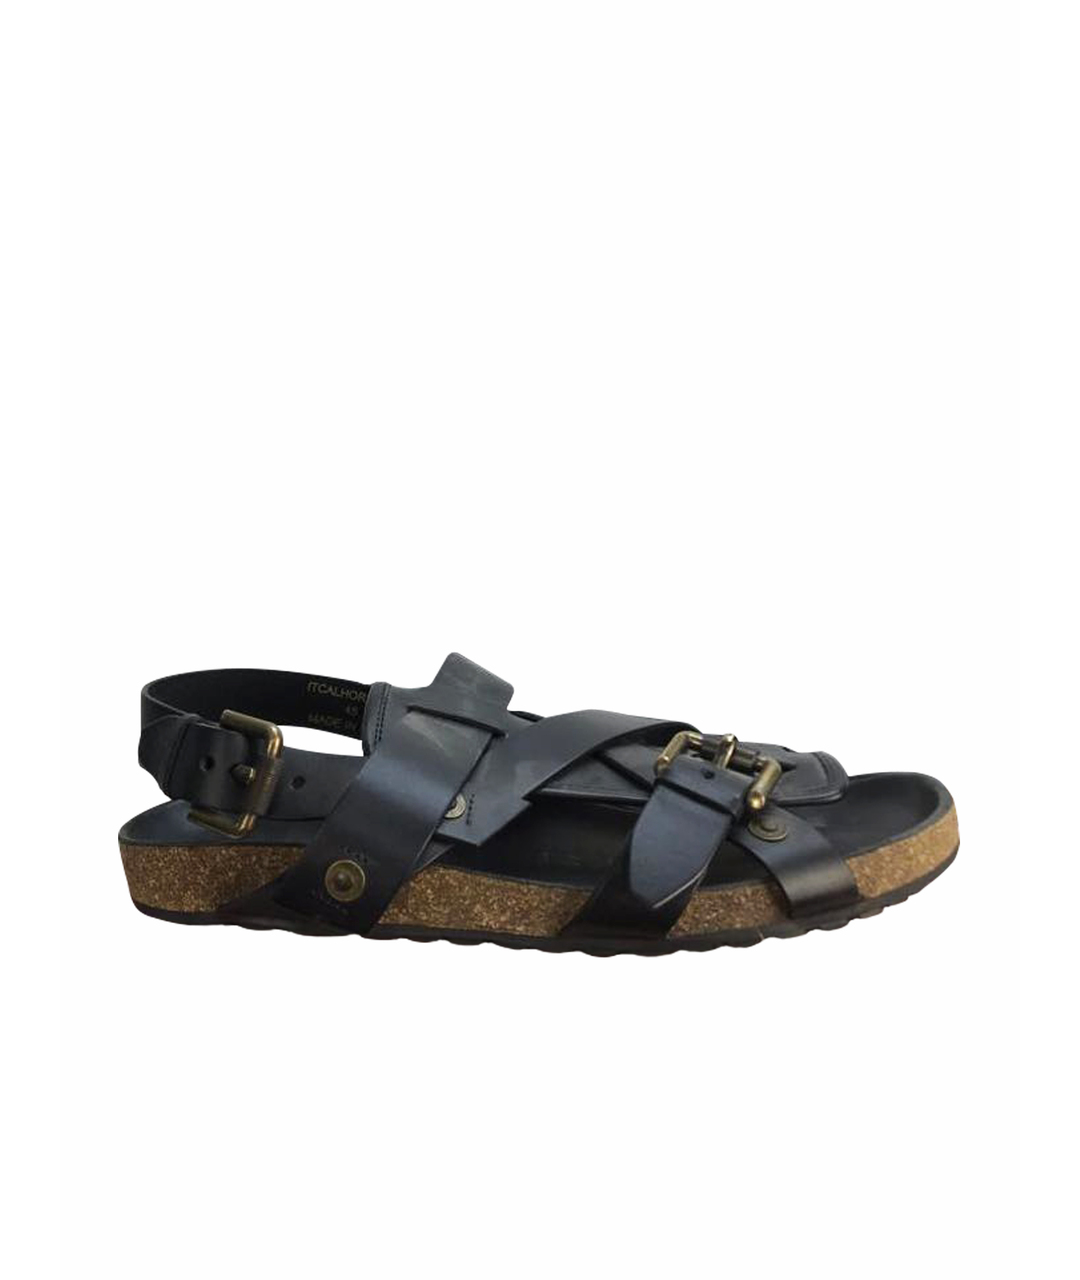 BURBERRY Черные кожаные сандалии, фото 1